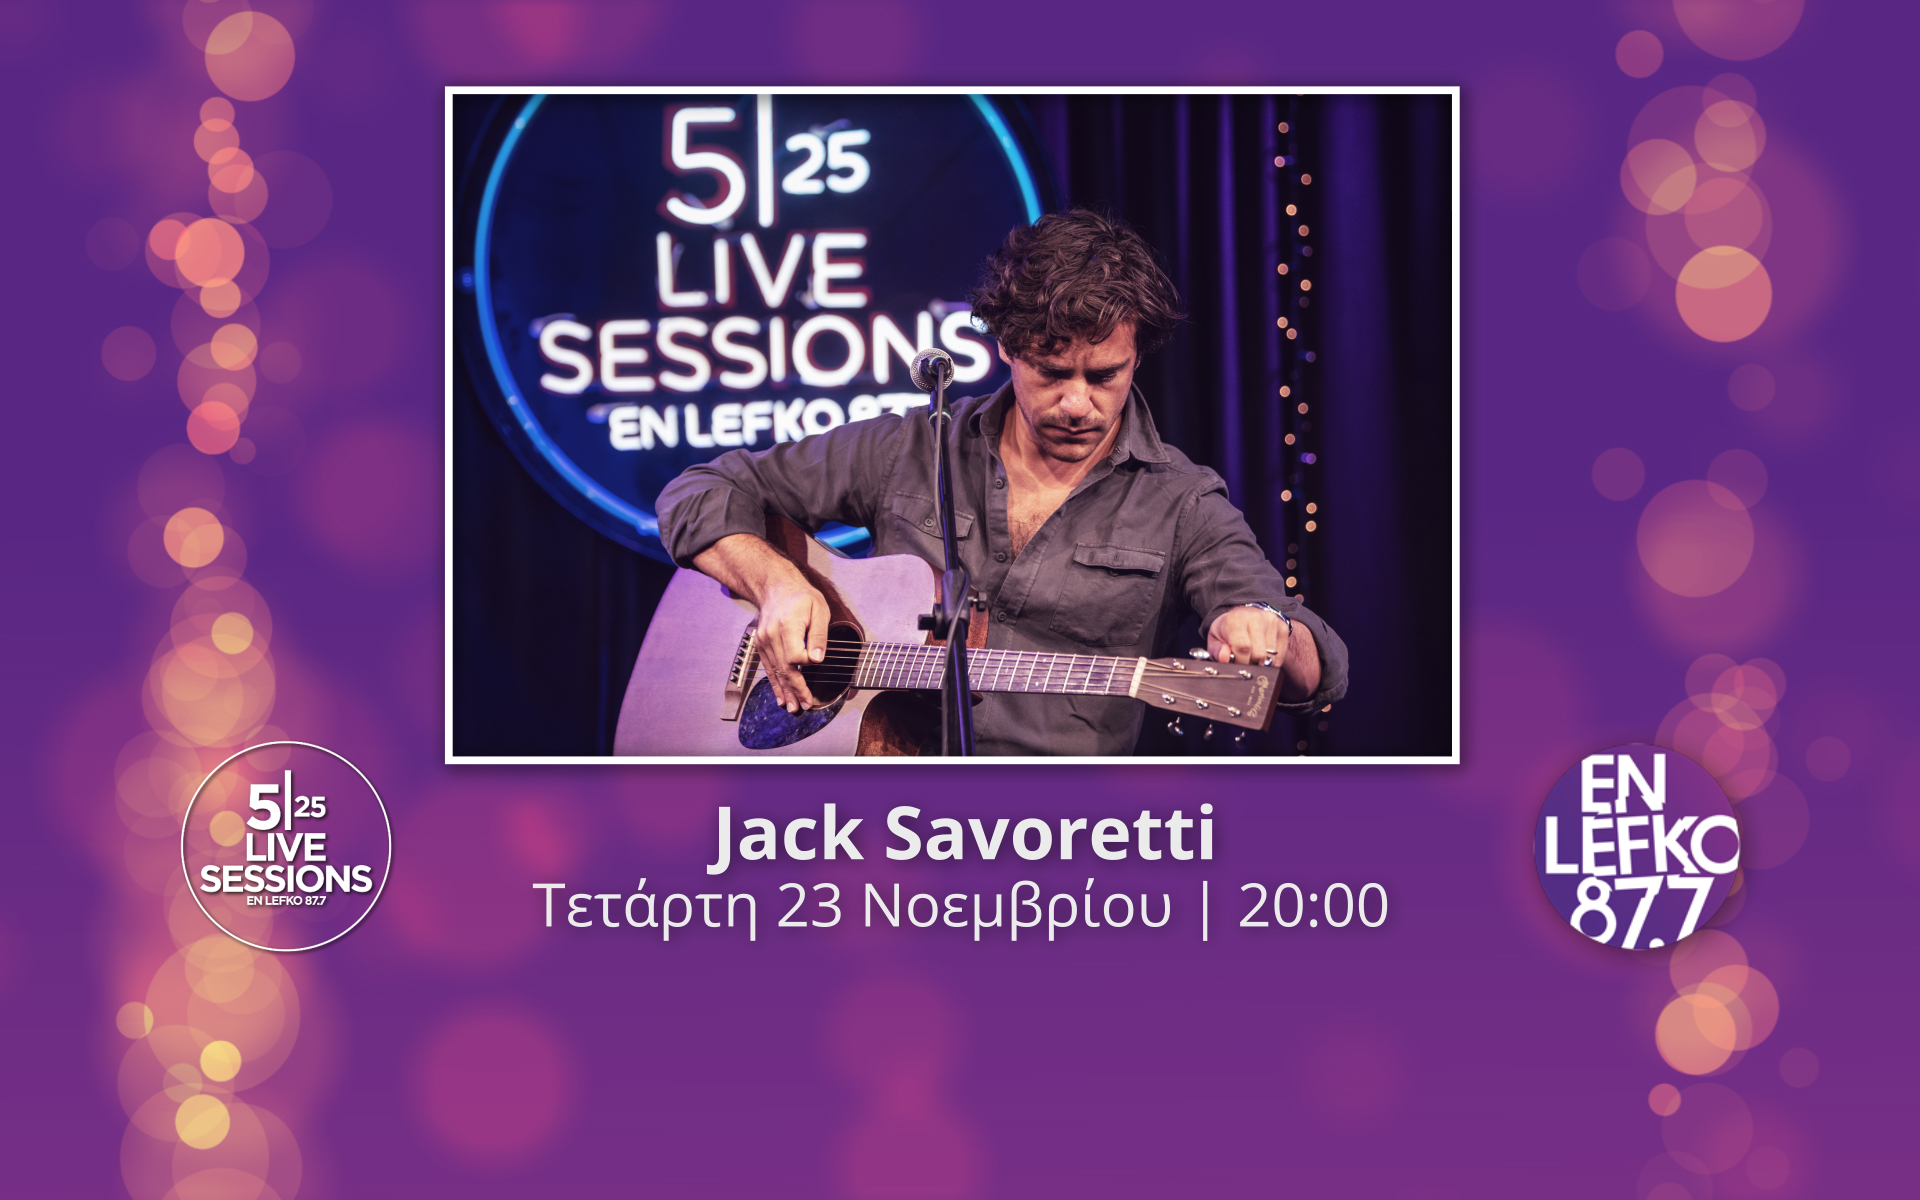 ο-jack-savoretti-στα-525-live-sessions-του-en-lefko-87-7-562136377